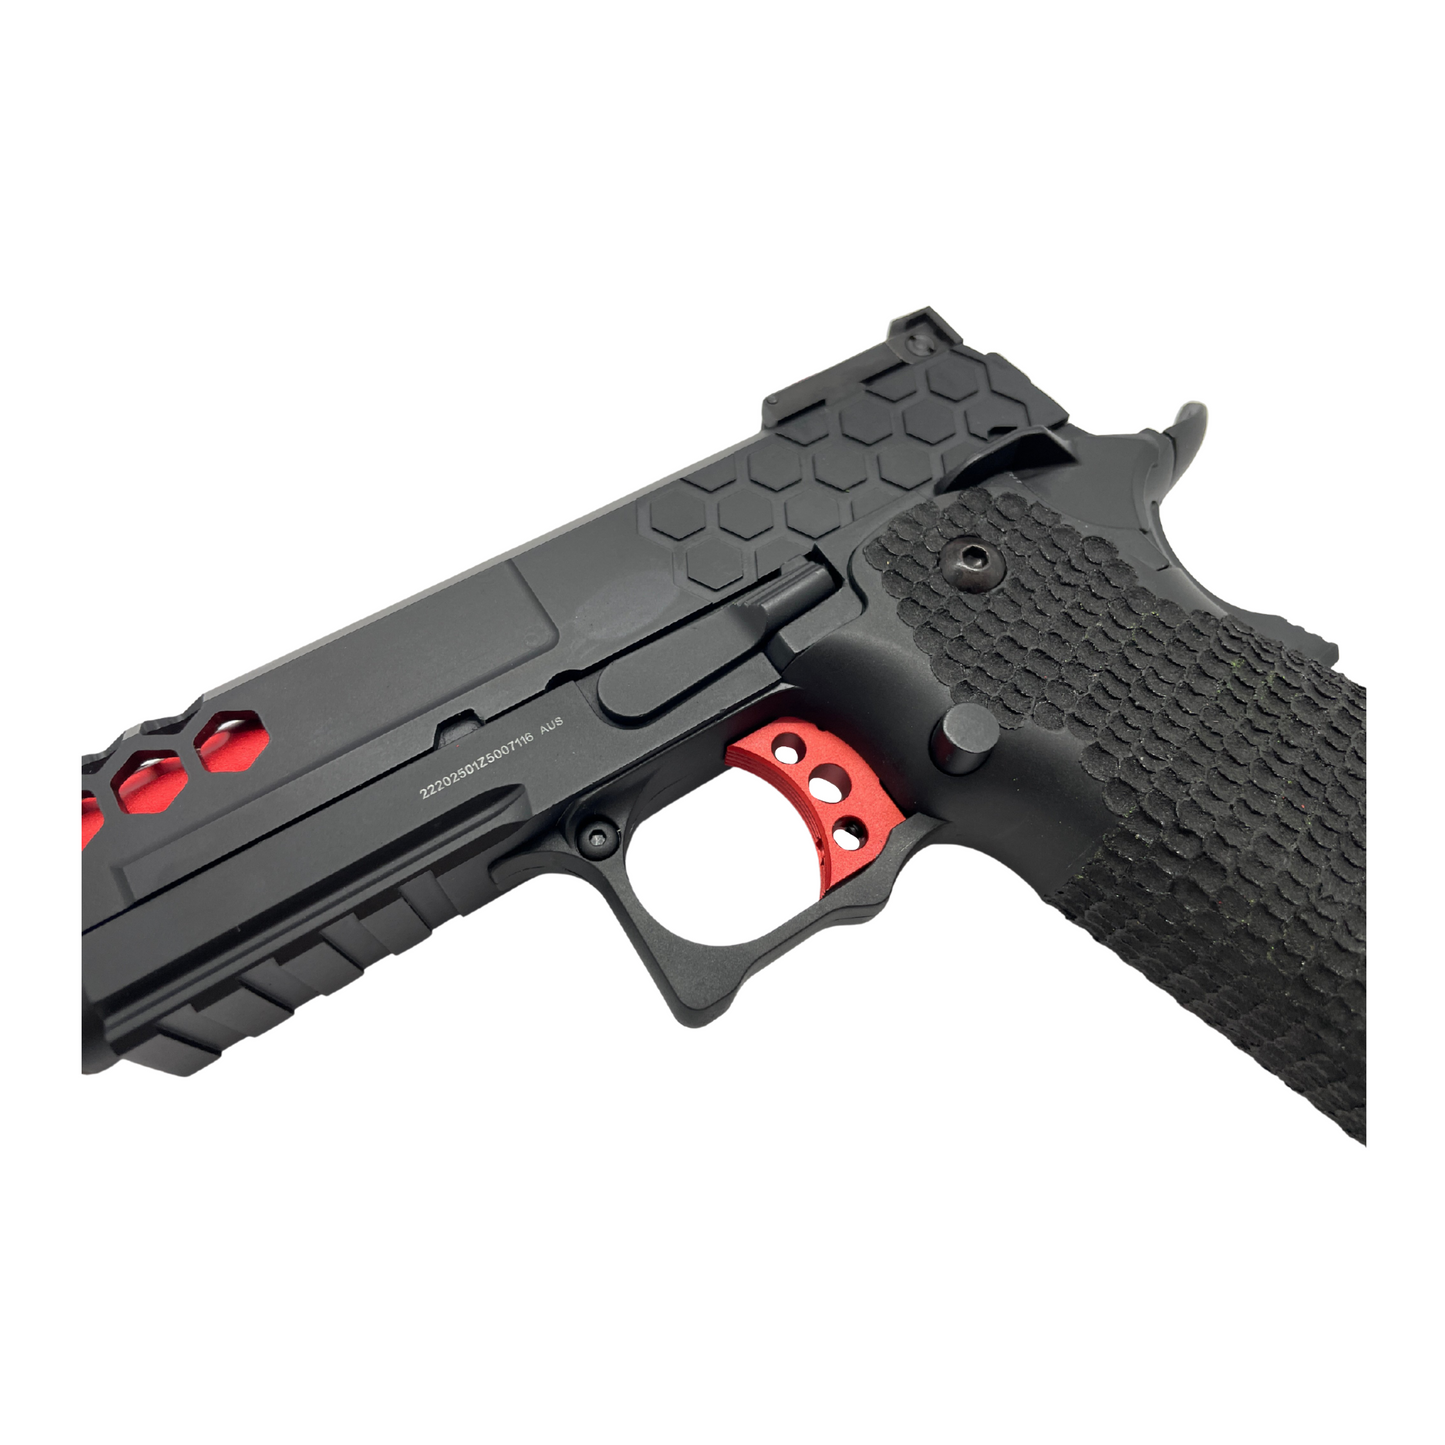 Custom Black and Red G/E G3399 Hi-Capa Gas Pistol - Gel Blaster